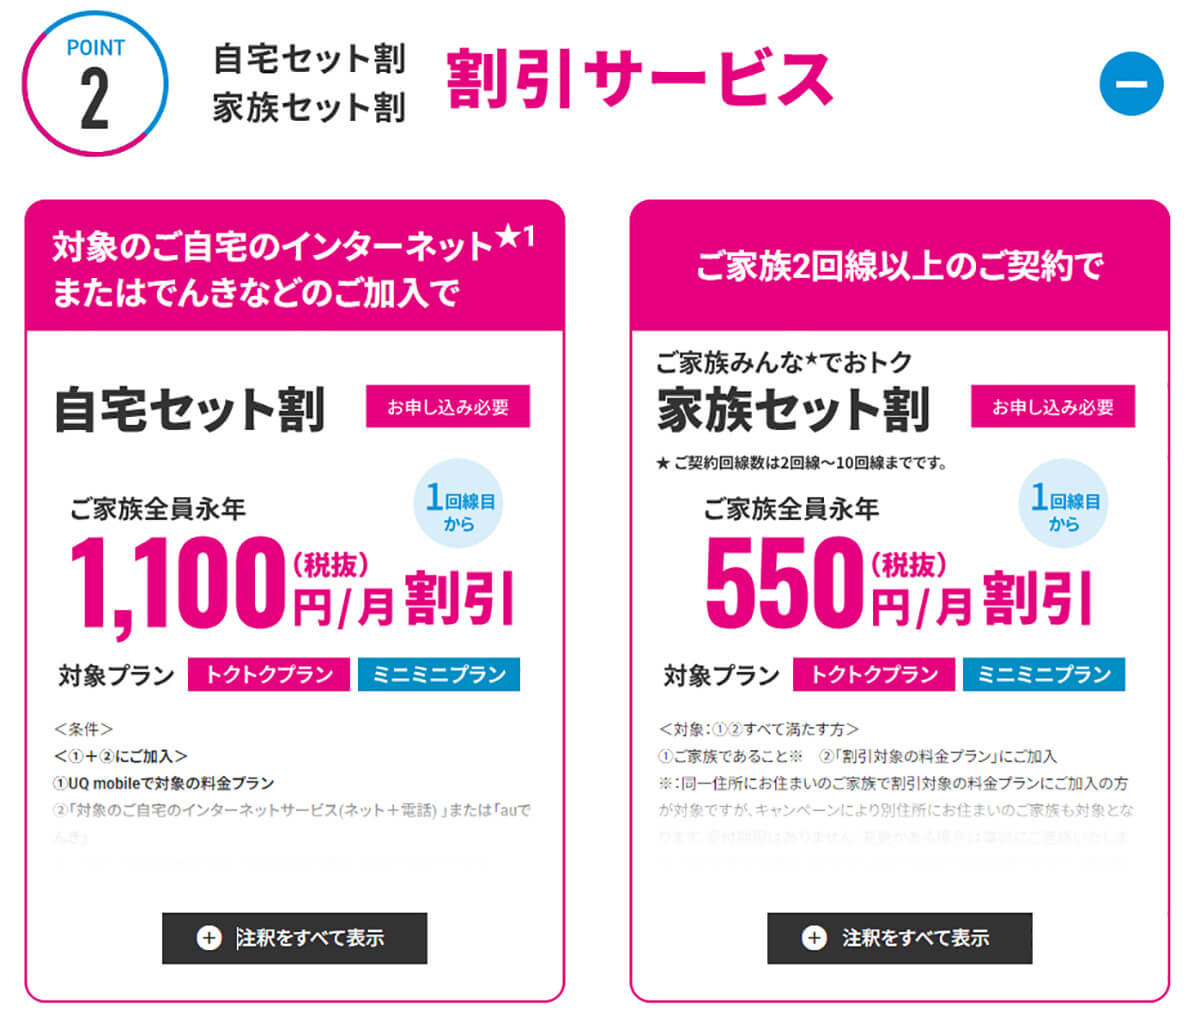 【サブキャリア1】UQ mobile「ミニミニプラン」2